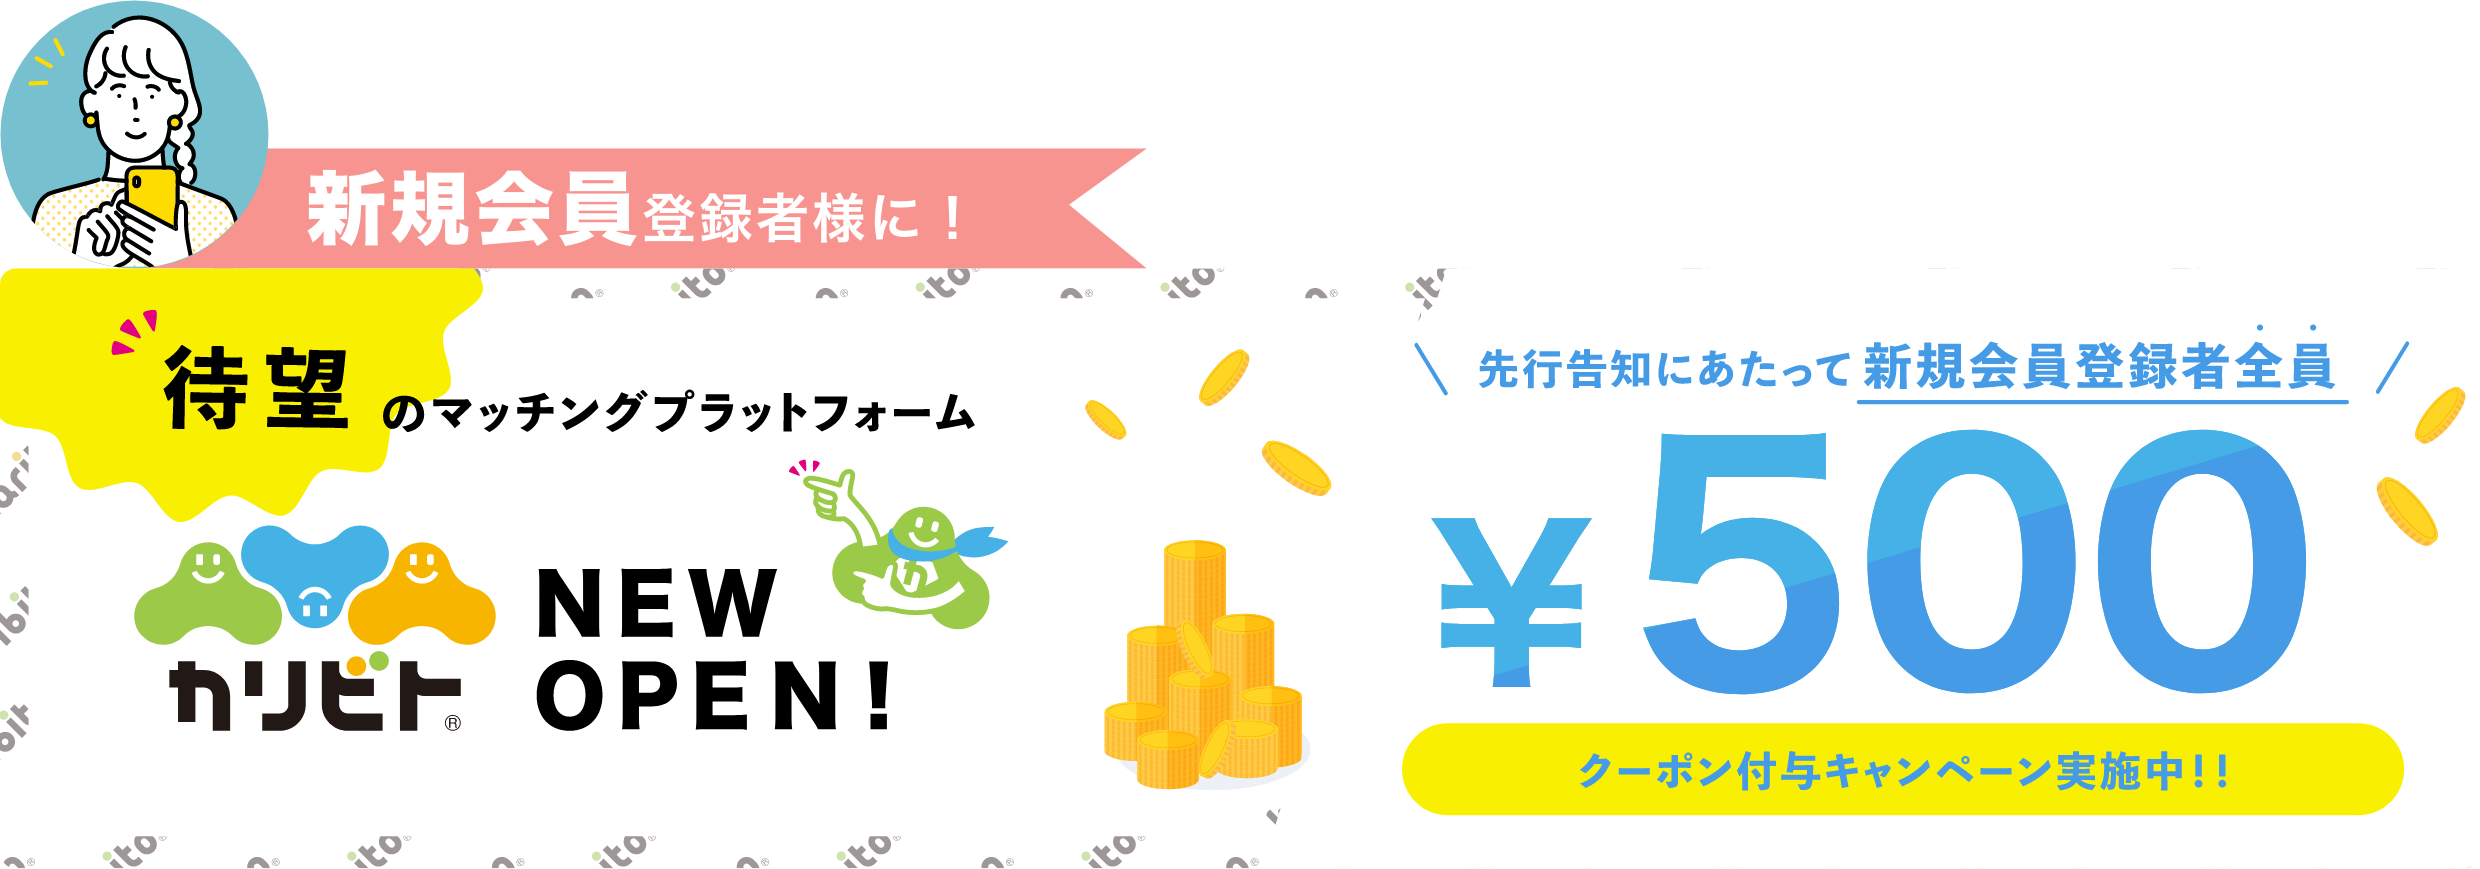 新規会員登録者様に ¥500分のクーポン付与キャンペーン実施中!!